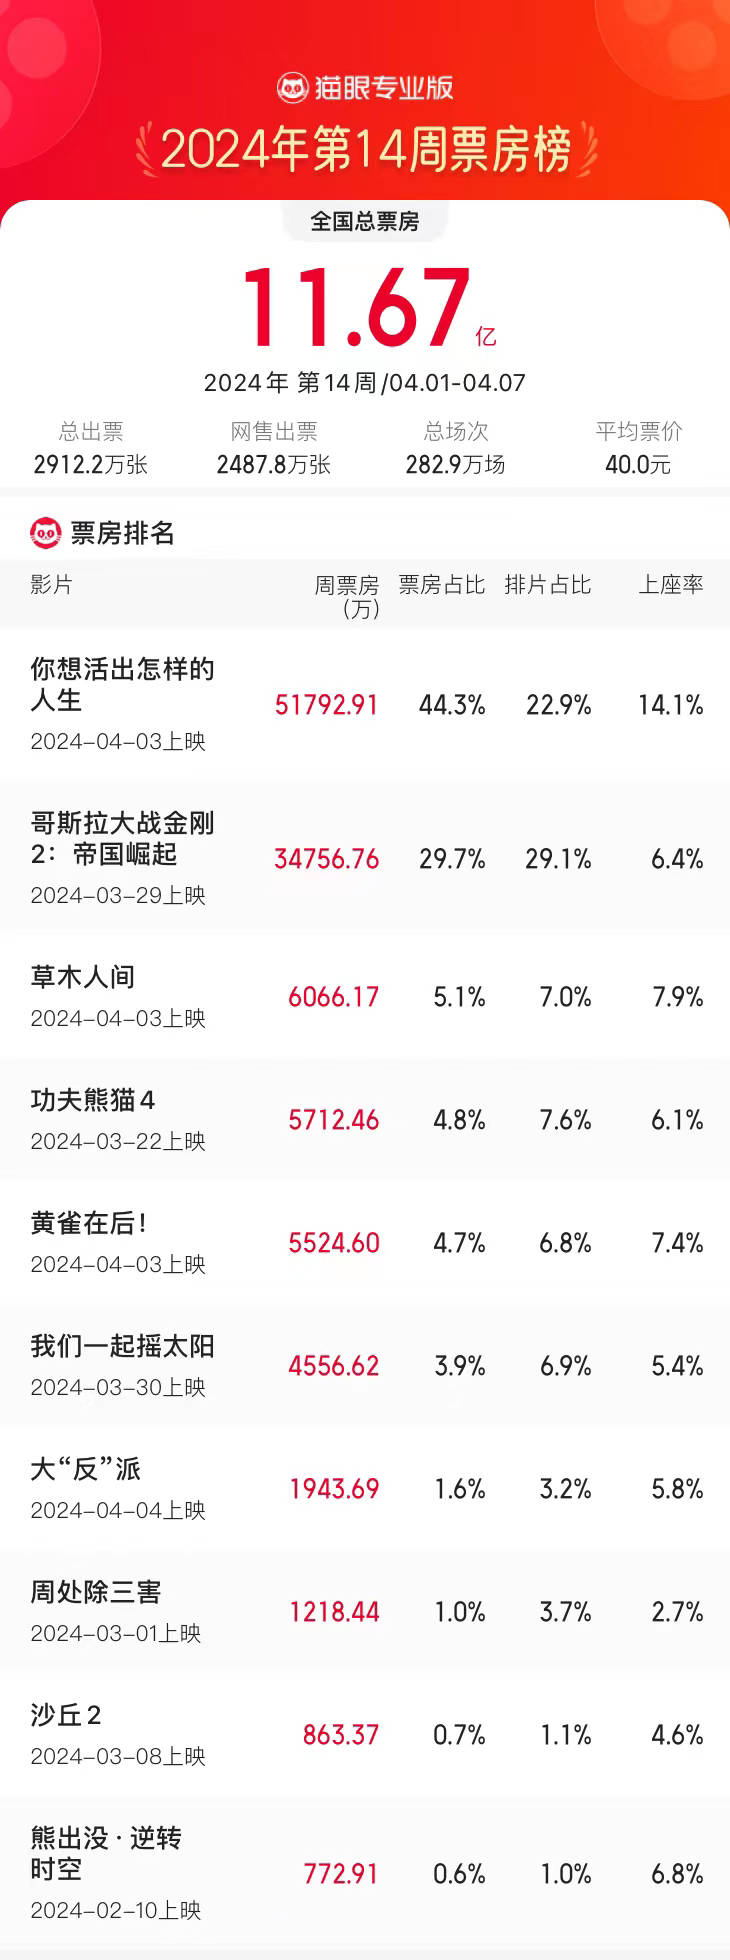 4.1-4.7内地一周票房11.67亿环比大涨112% 宫崎骏动画新作累计票房超5亿夺冠 